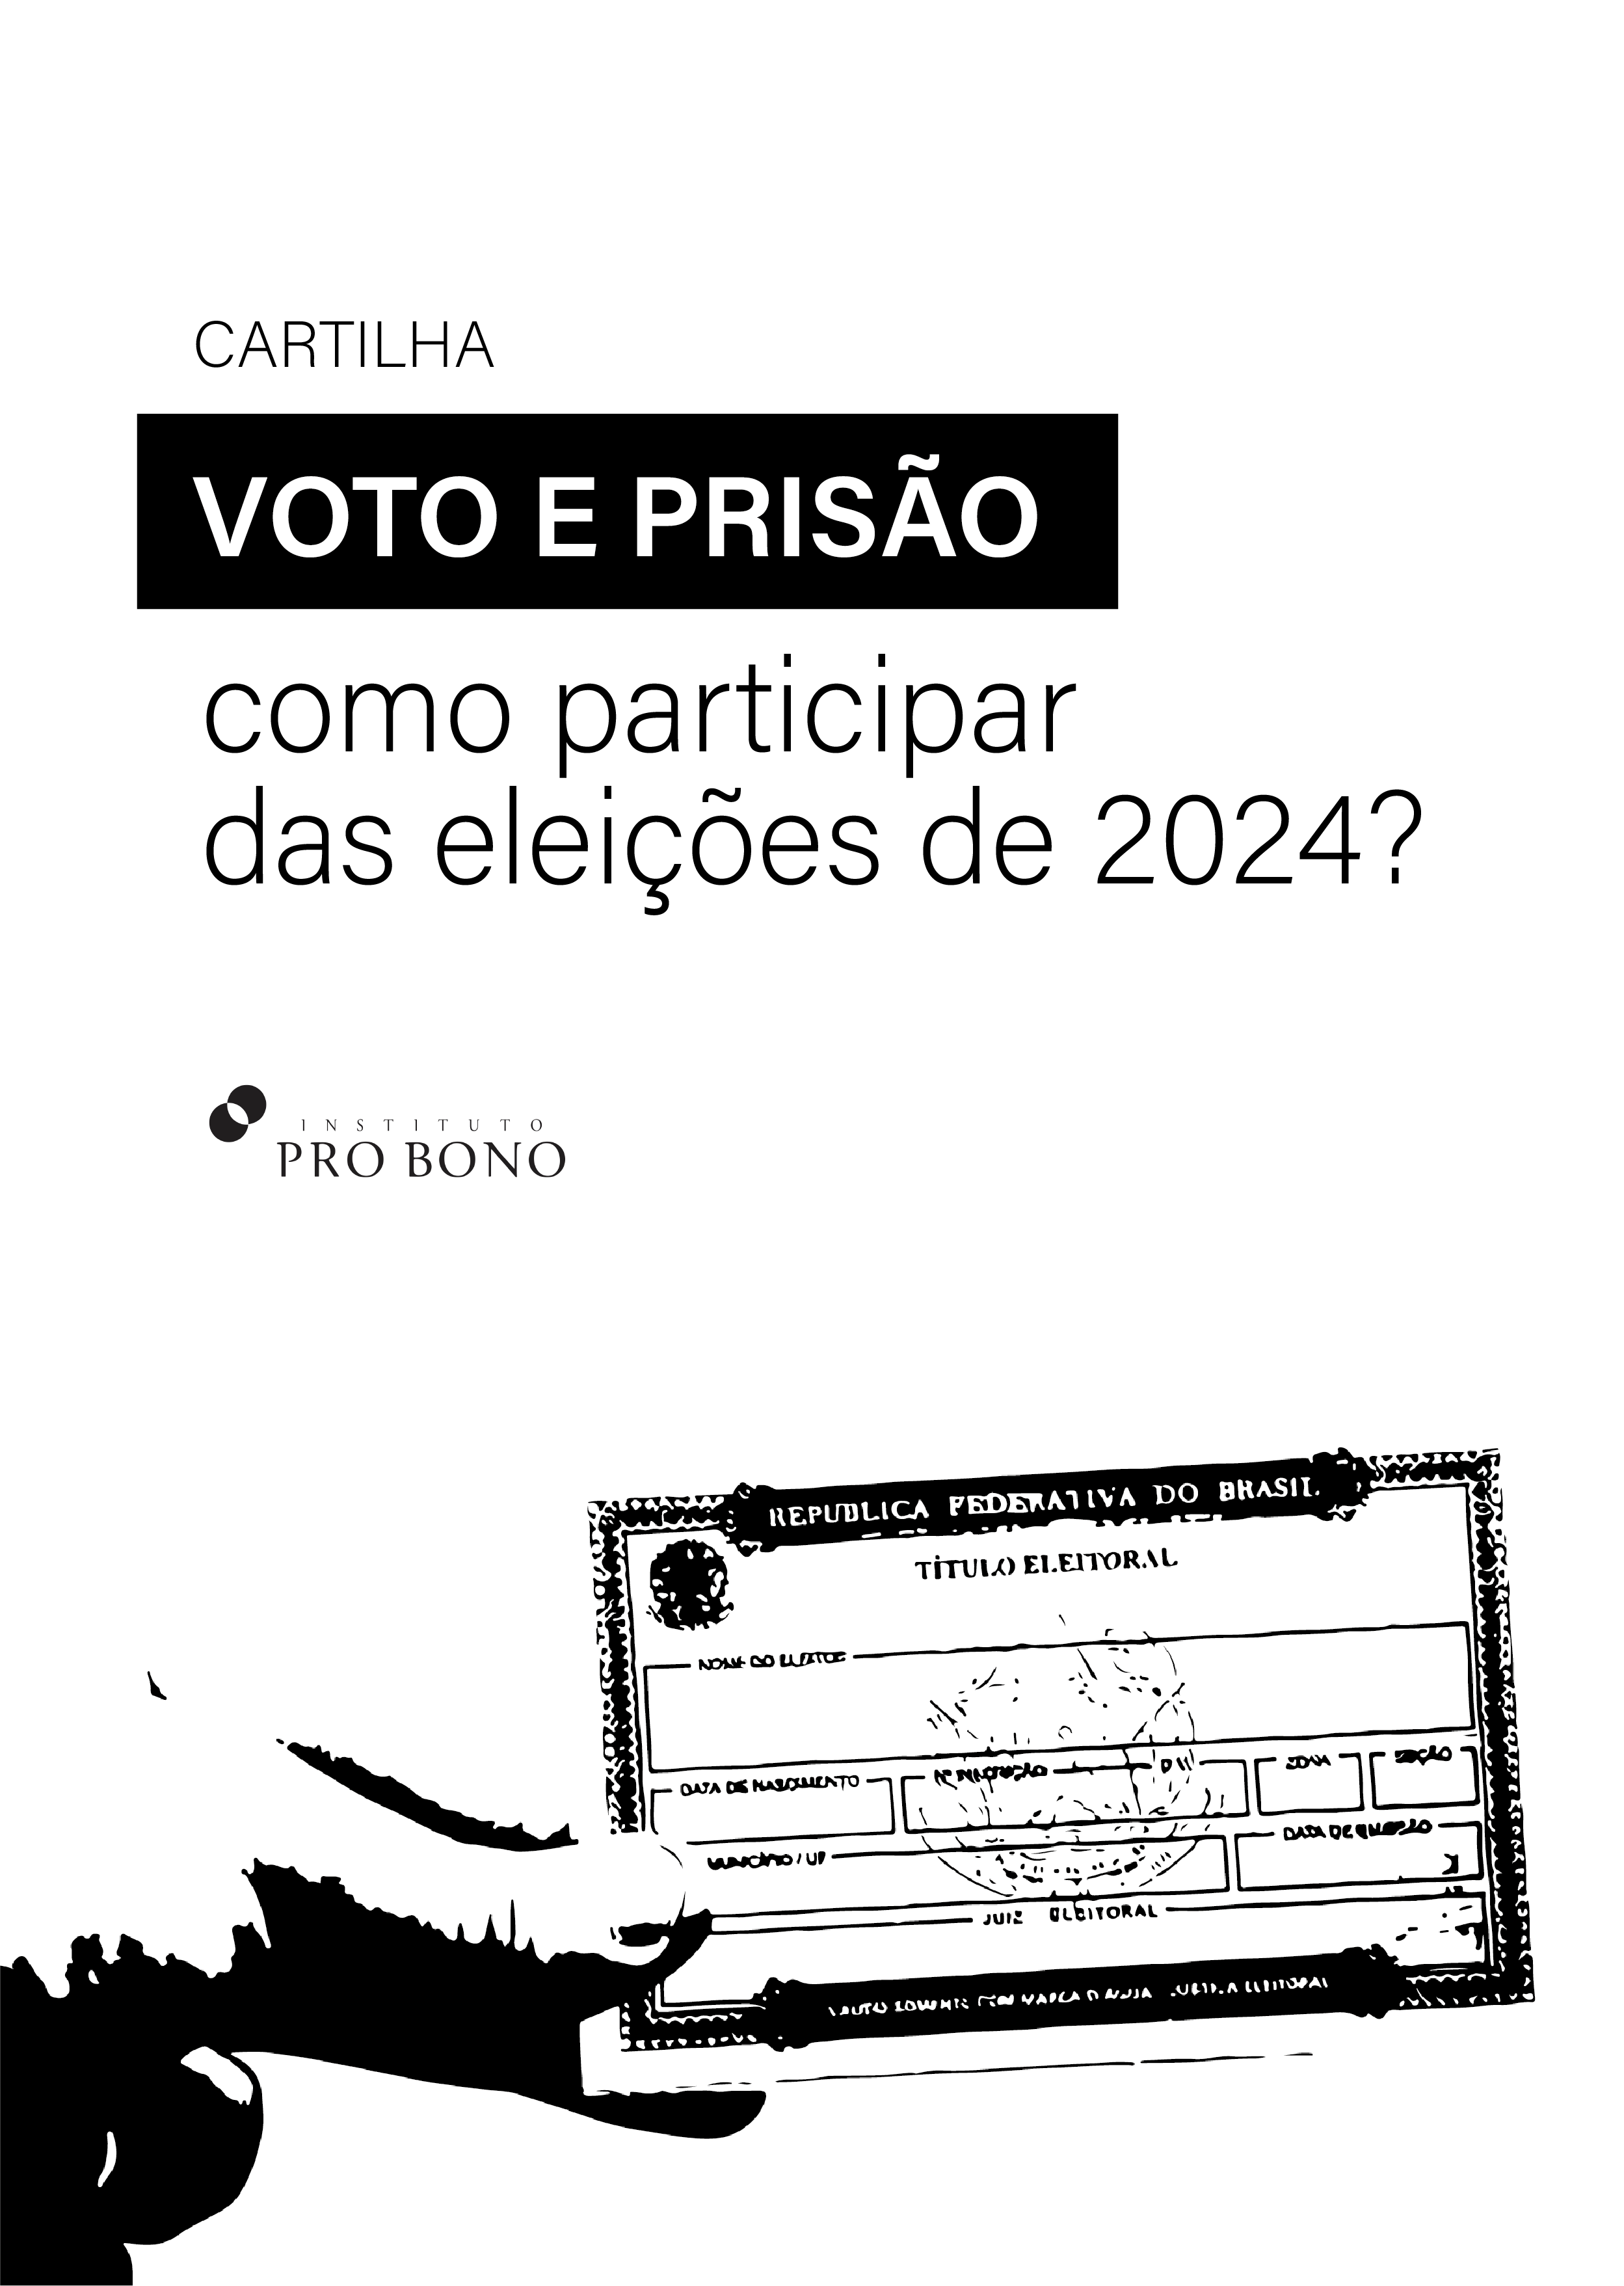 Voto e prisão: como participar das eleições em 2024?